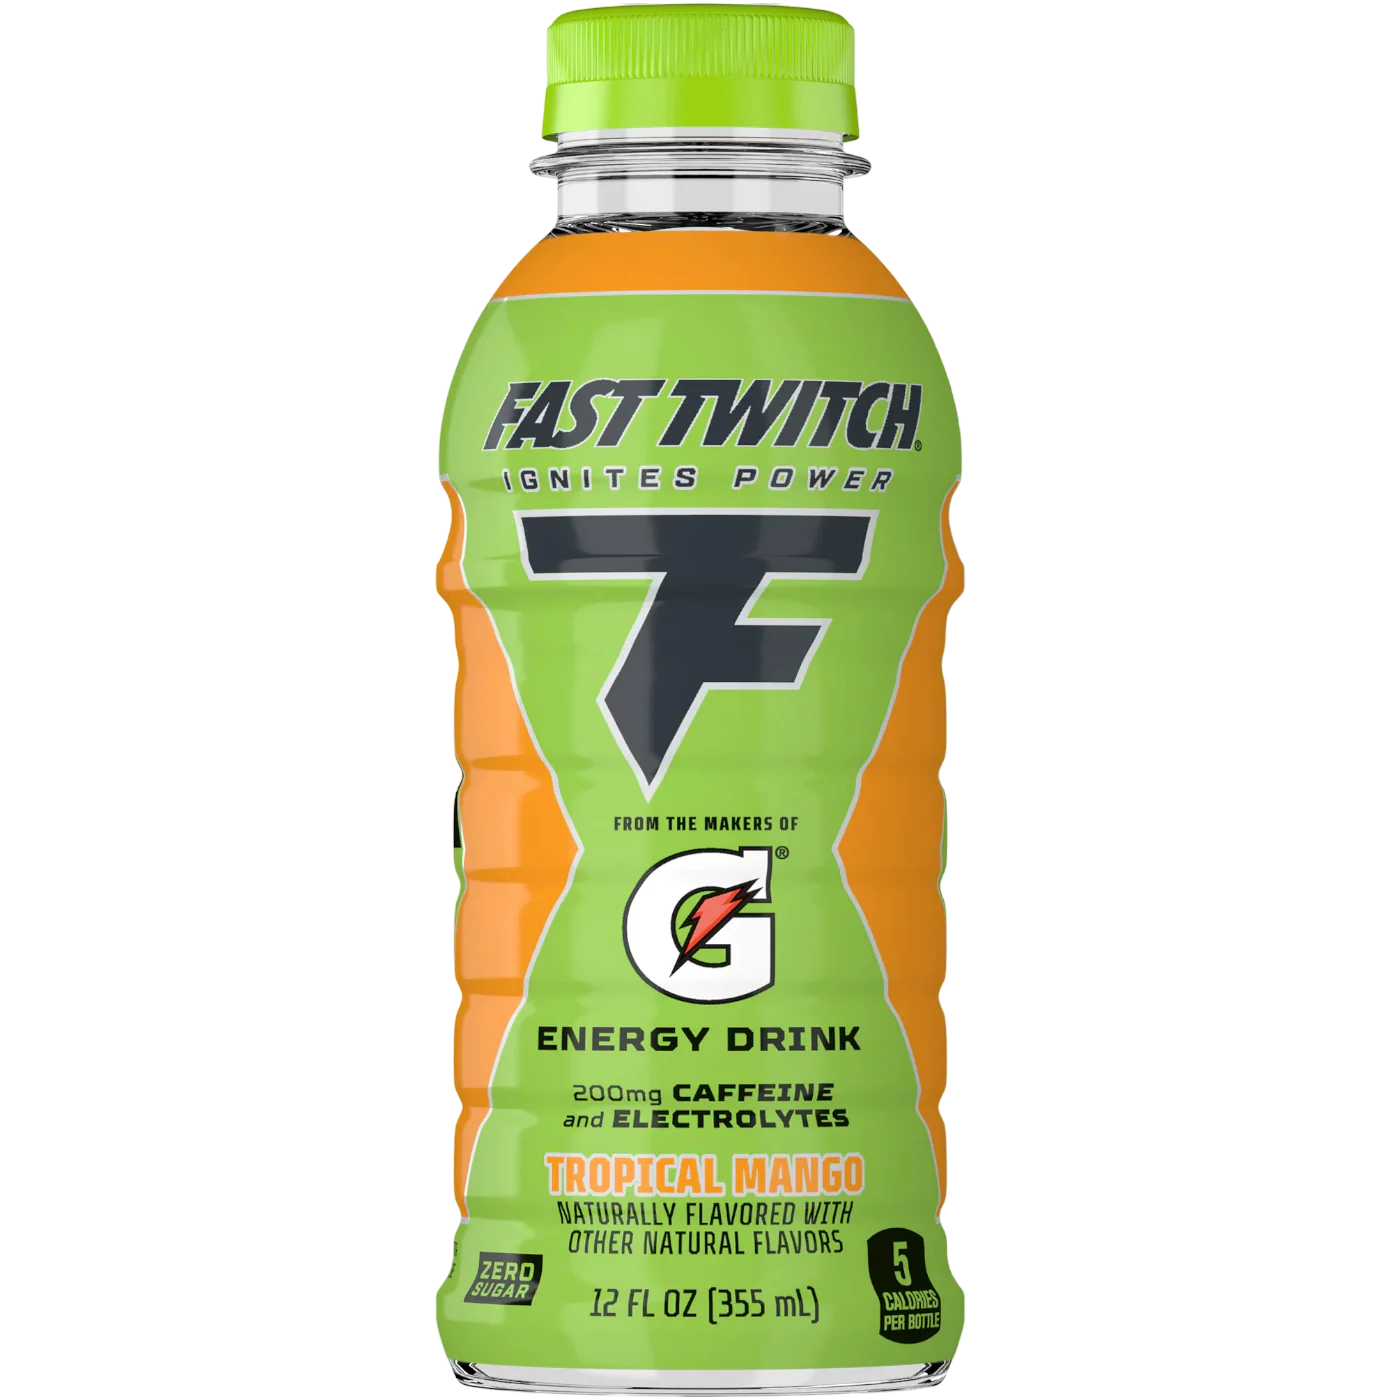 Gatorade Fast Twitch Tropical Mango Energy Drink (355ml)